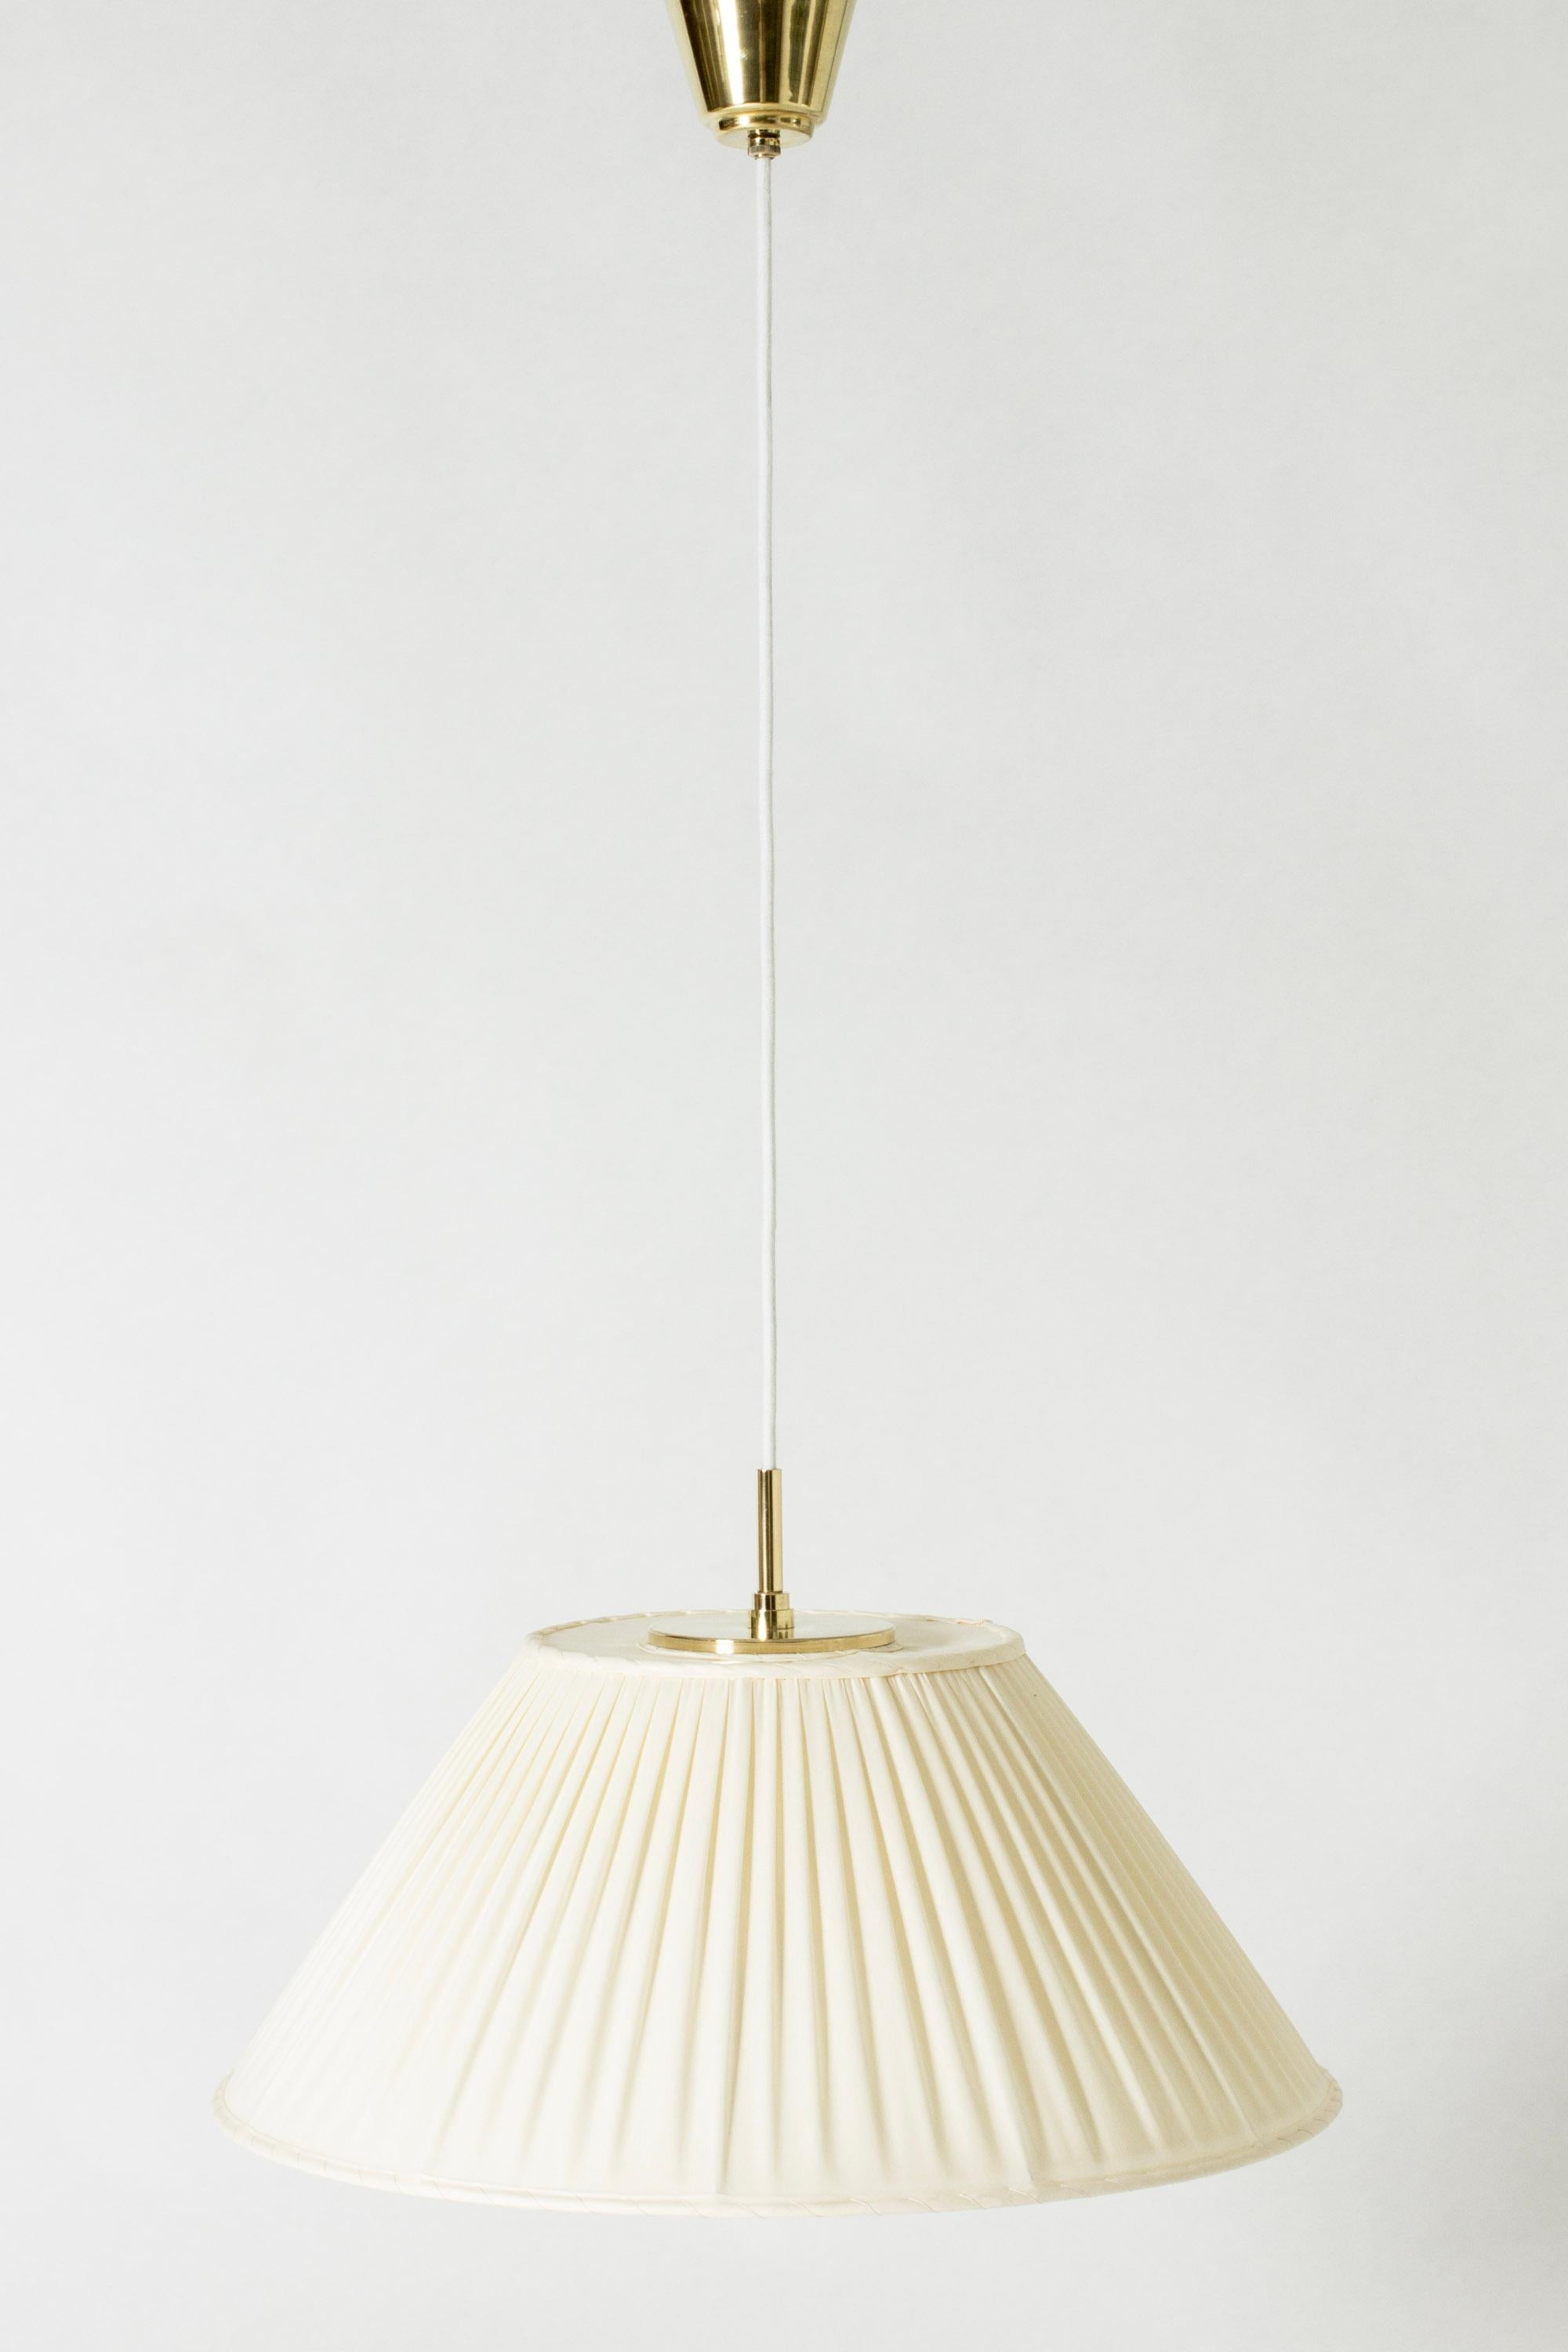 Mid-20th Century Midcentury Modern Pendant Light by Josef Frank, Svenskt Tenn, Sweden, 1950s